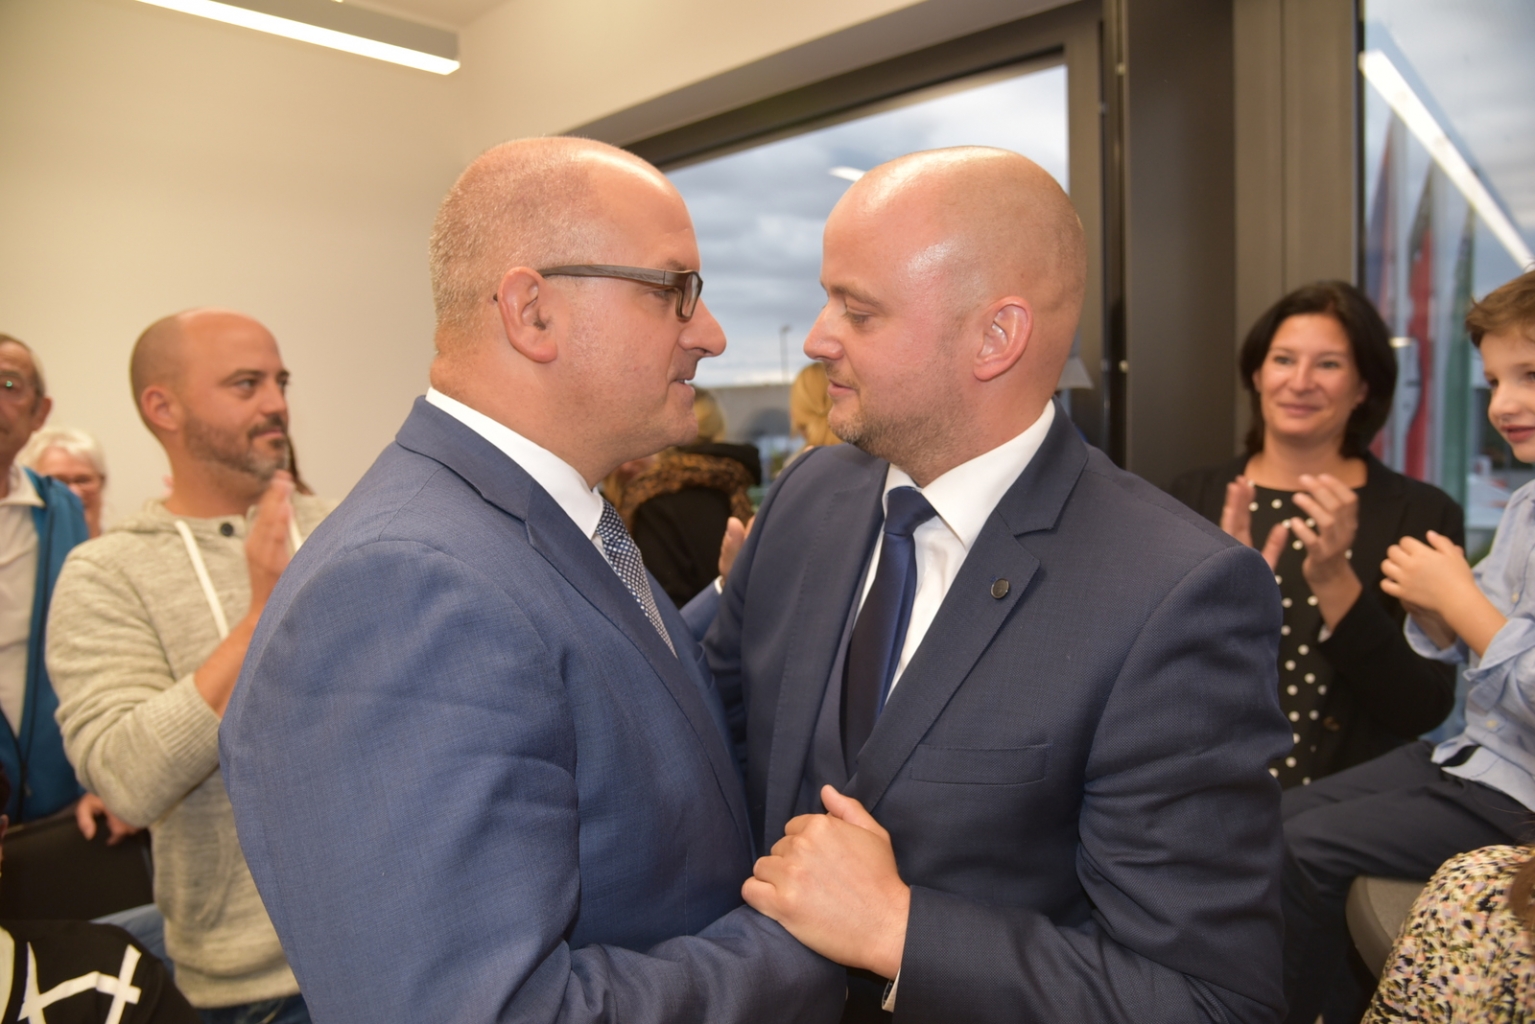  Der amtierende Bürgermeister Jens Geiß (links) gratuliert seinem Nachfolger, dem neu gewählten Bürgermeister Pascal Seidel (rechts).